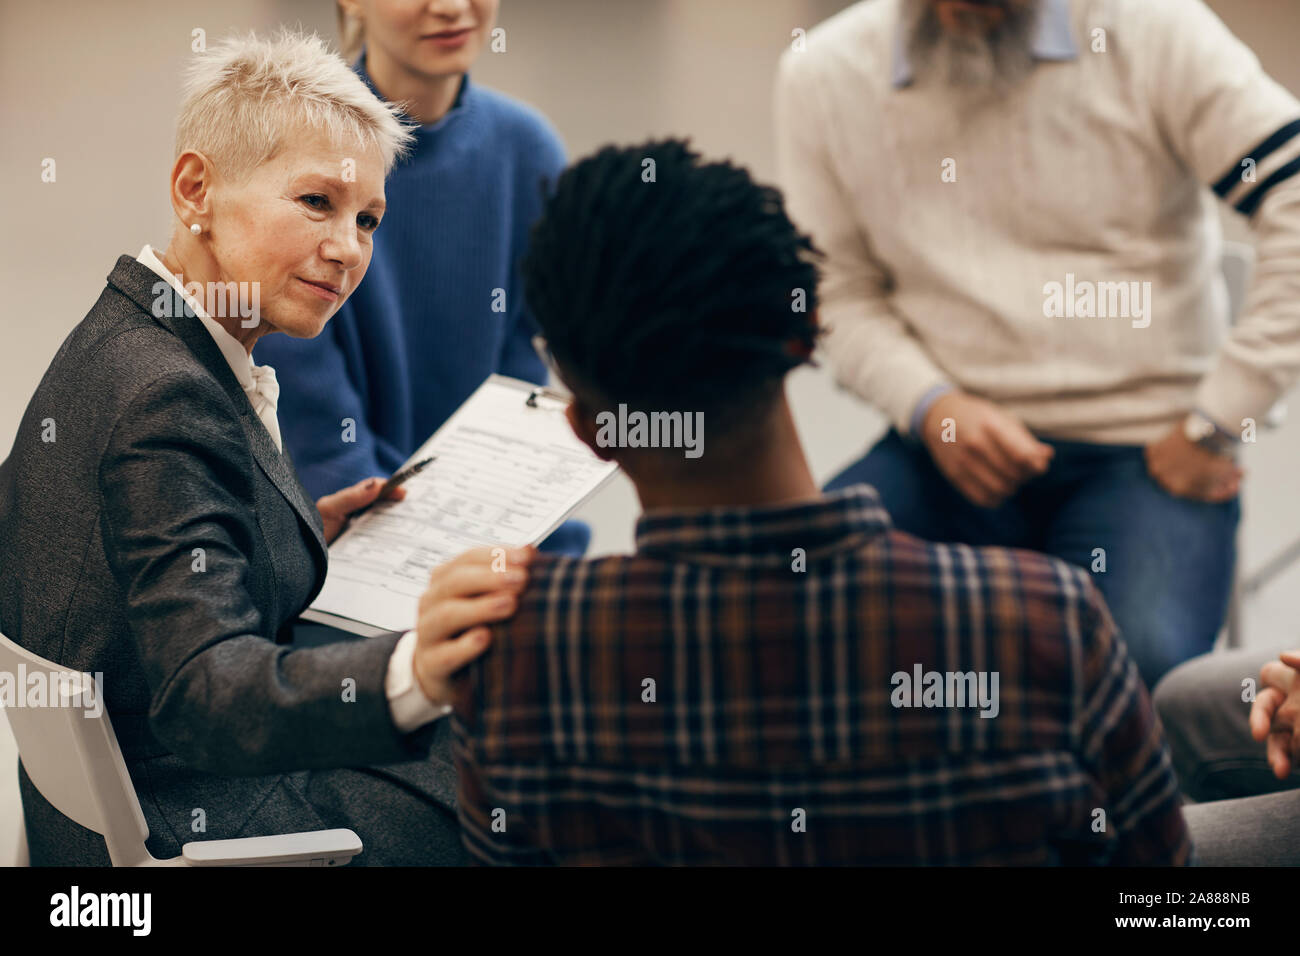 Femme mature avec de courts cheveux blonds à l'écoute des jeunes de l'Afrique de l'homme et le soutenir pendant le traitement avec la classe de leçon Banque D'Images